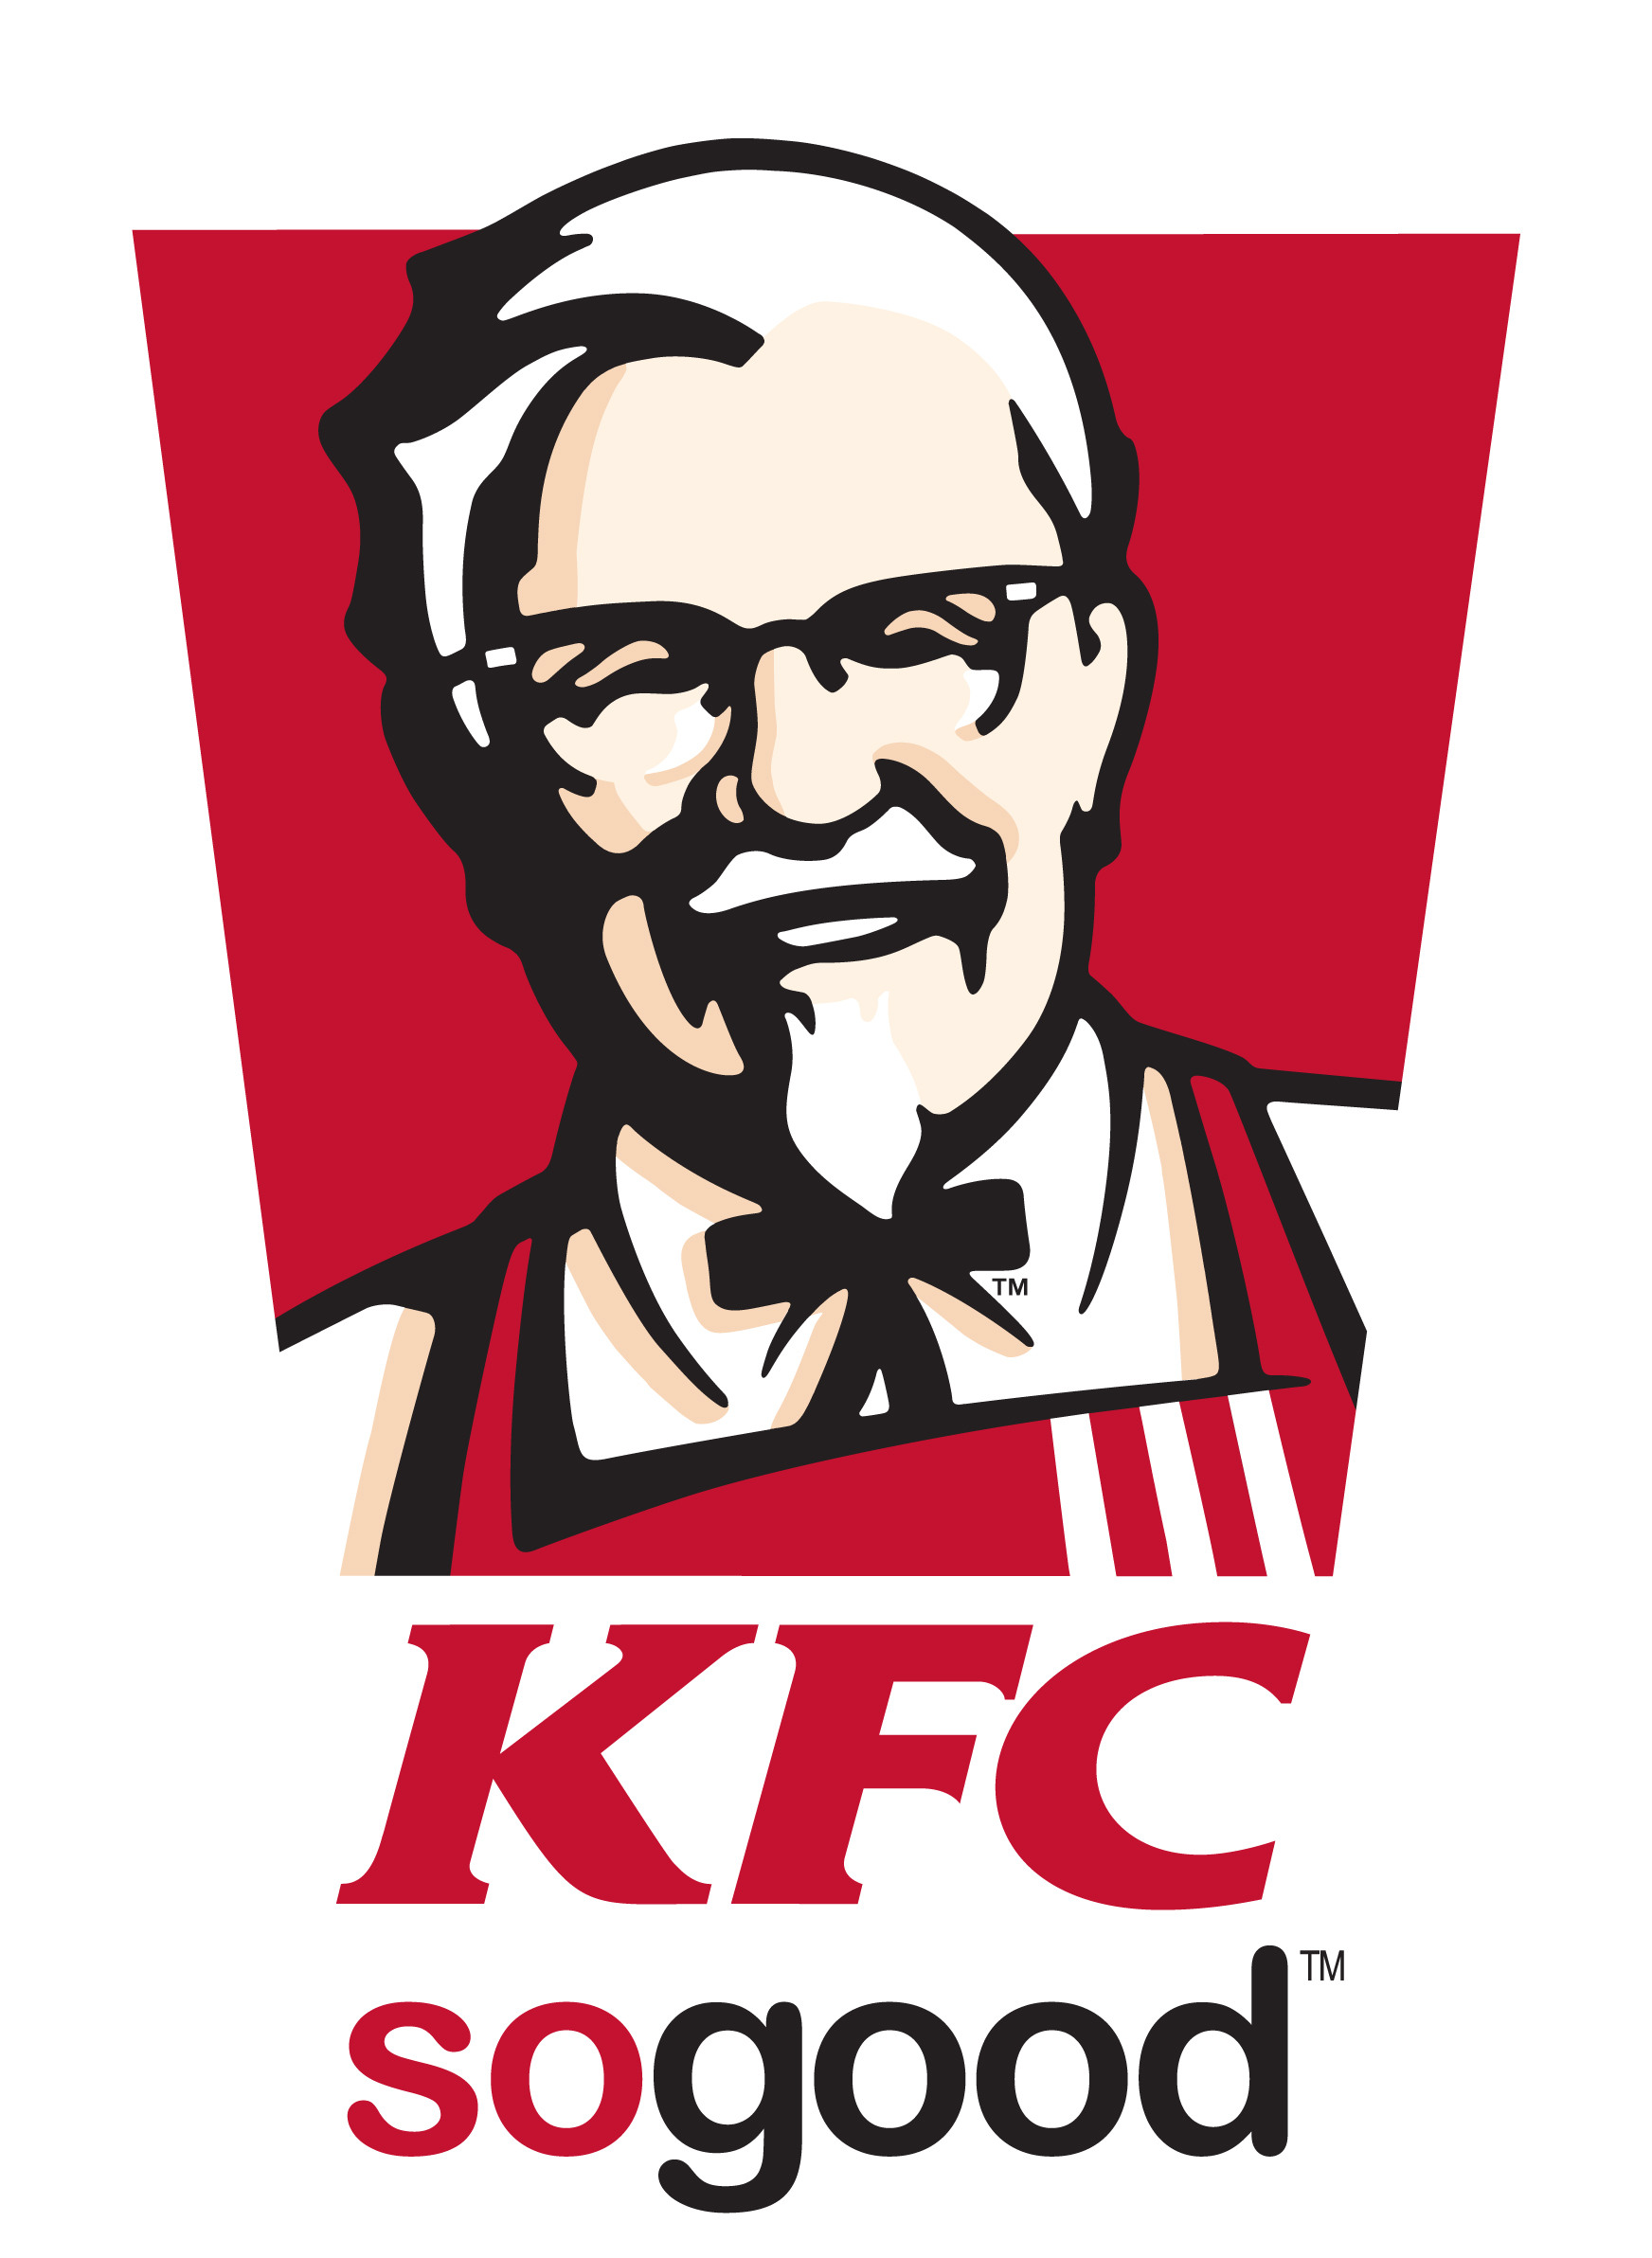 Daftar Harga Menu KFC Terbaru Achilq